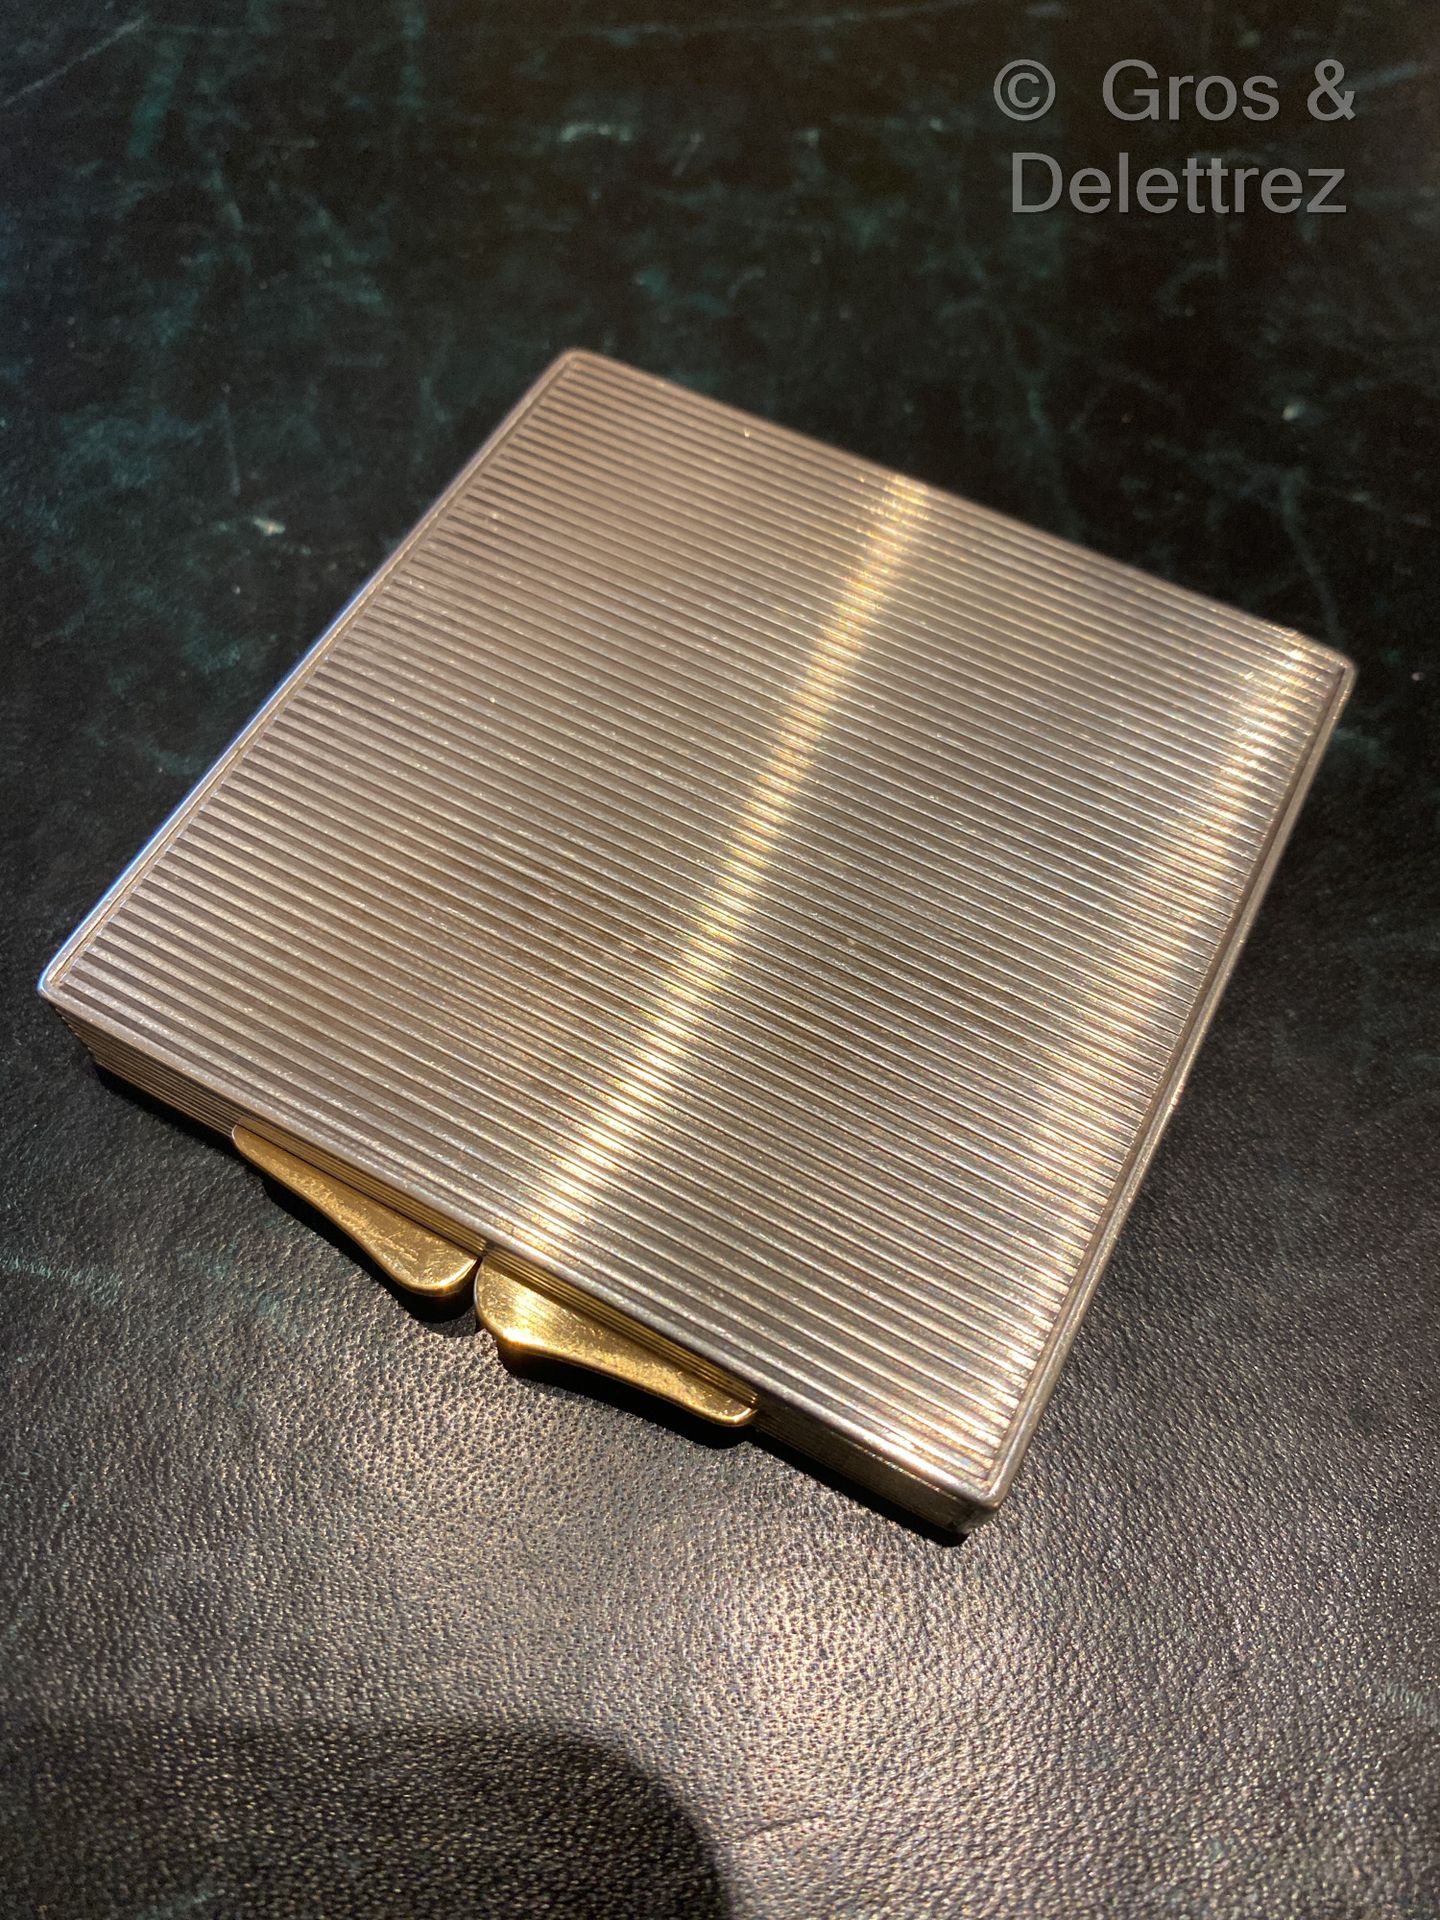 Null (E) 银质的Minaudière，有凹槽的装饰，黄金的扣子。

Minerve的标志

尺寸 : 7 x 7 cm - 毛重 : 135 g. 凹陷&hellip;